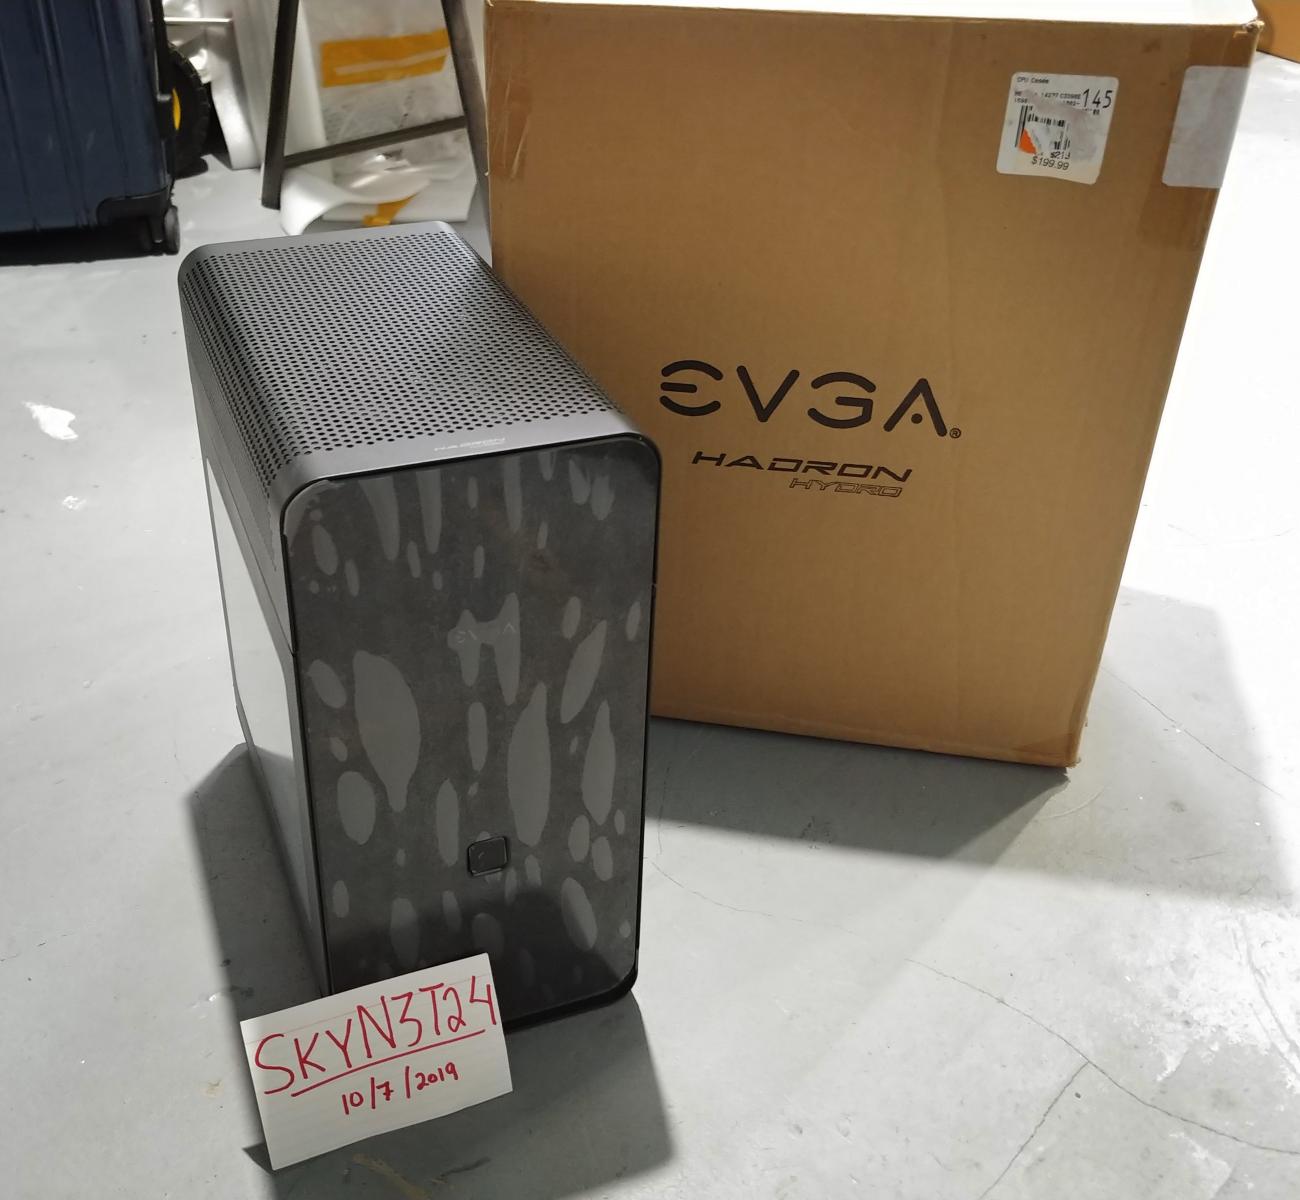 For sale EVGA Hadron Hydro Mini-ITX Case w/500w PSU. Open Box, Great!